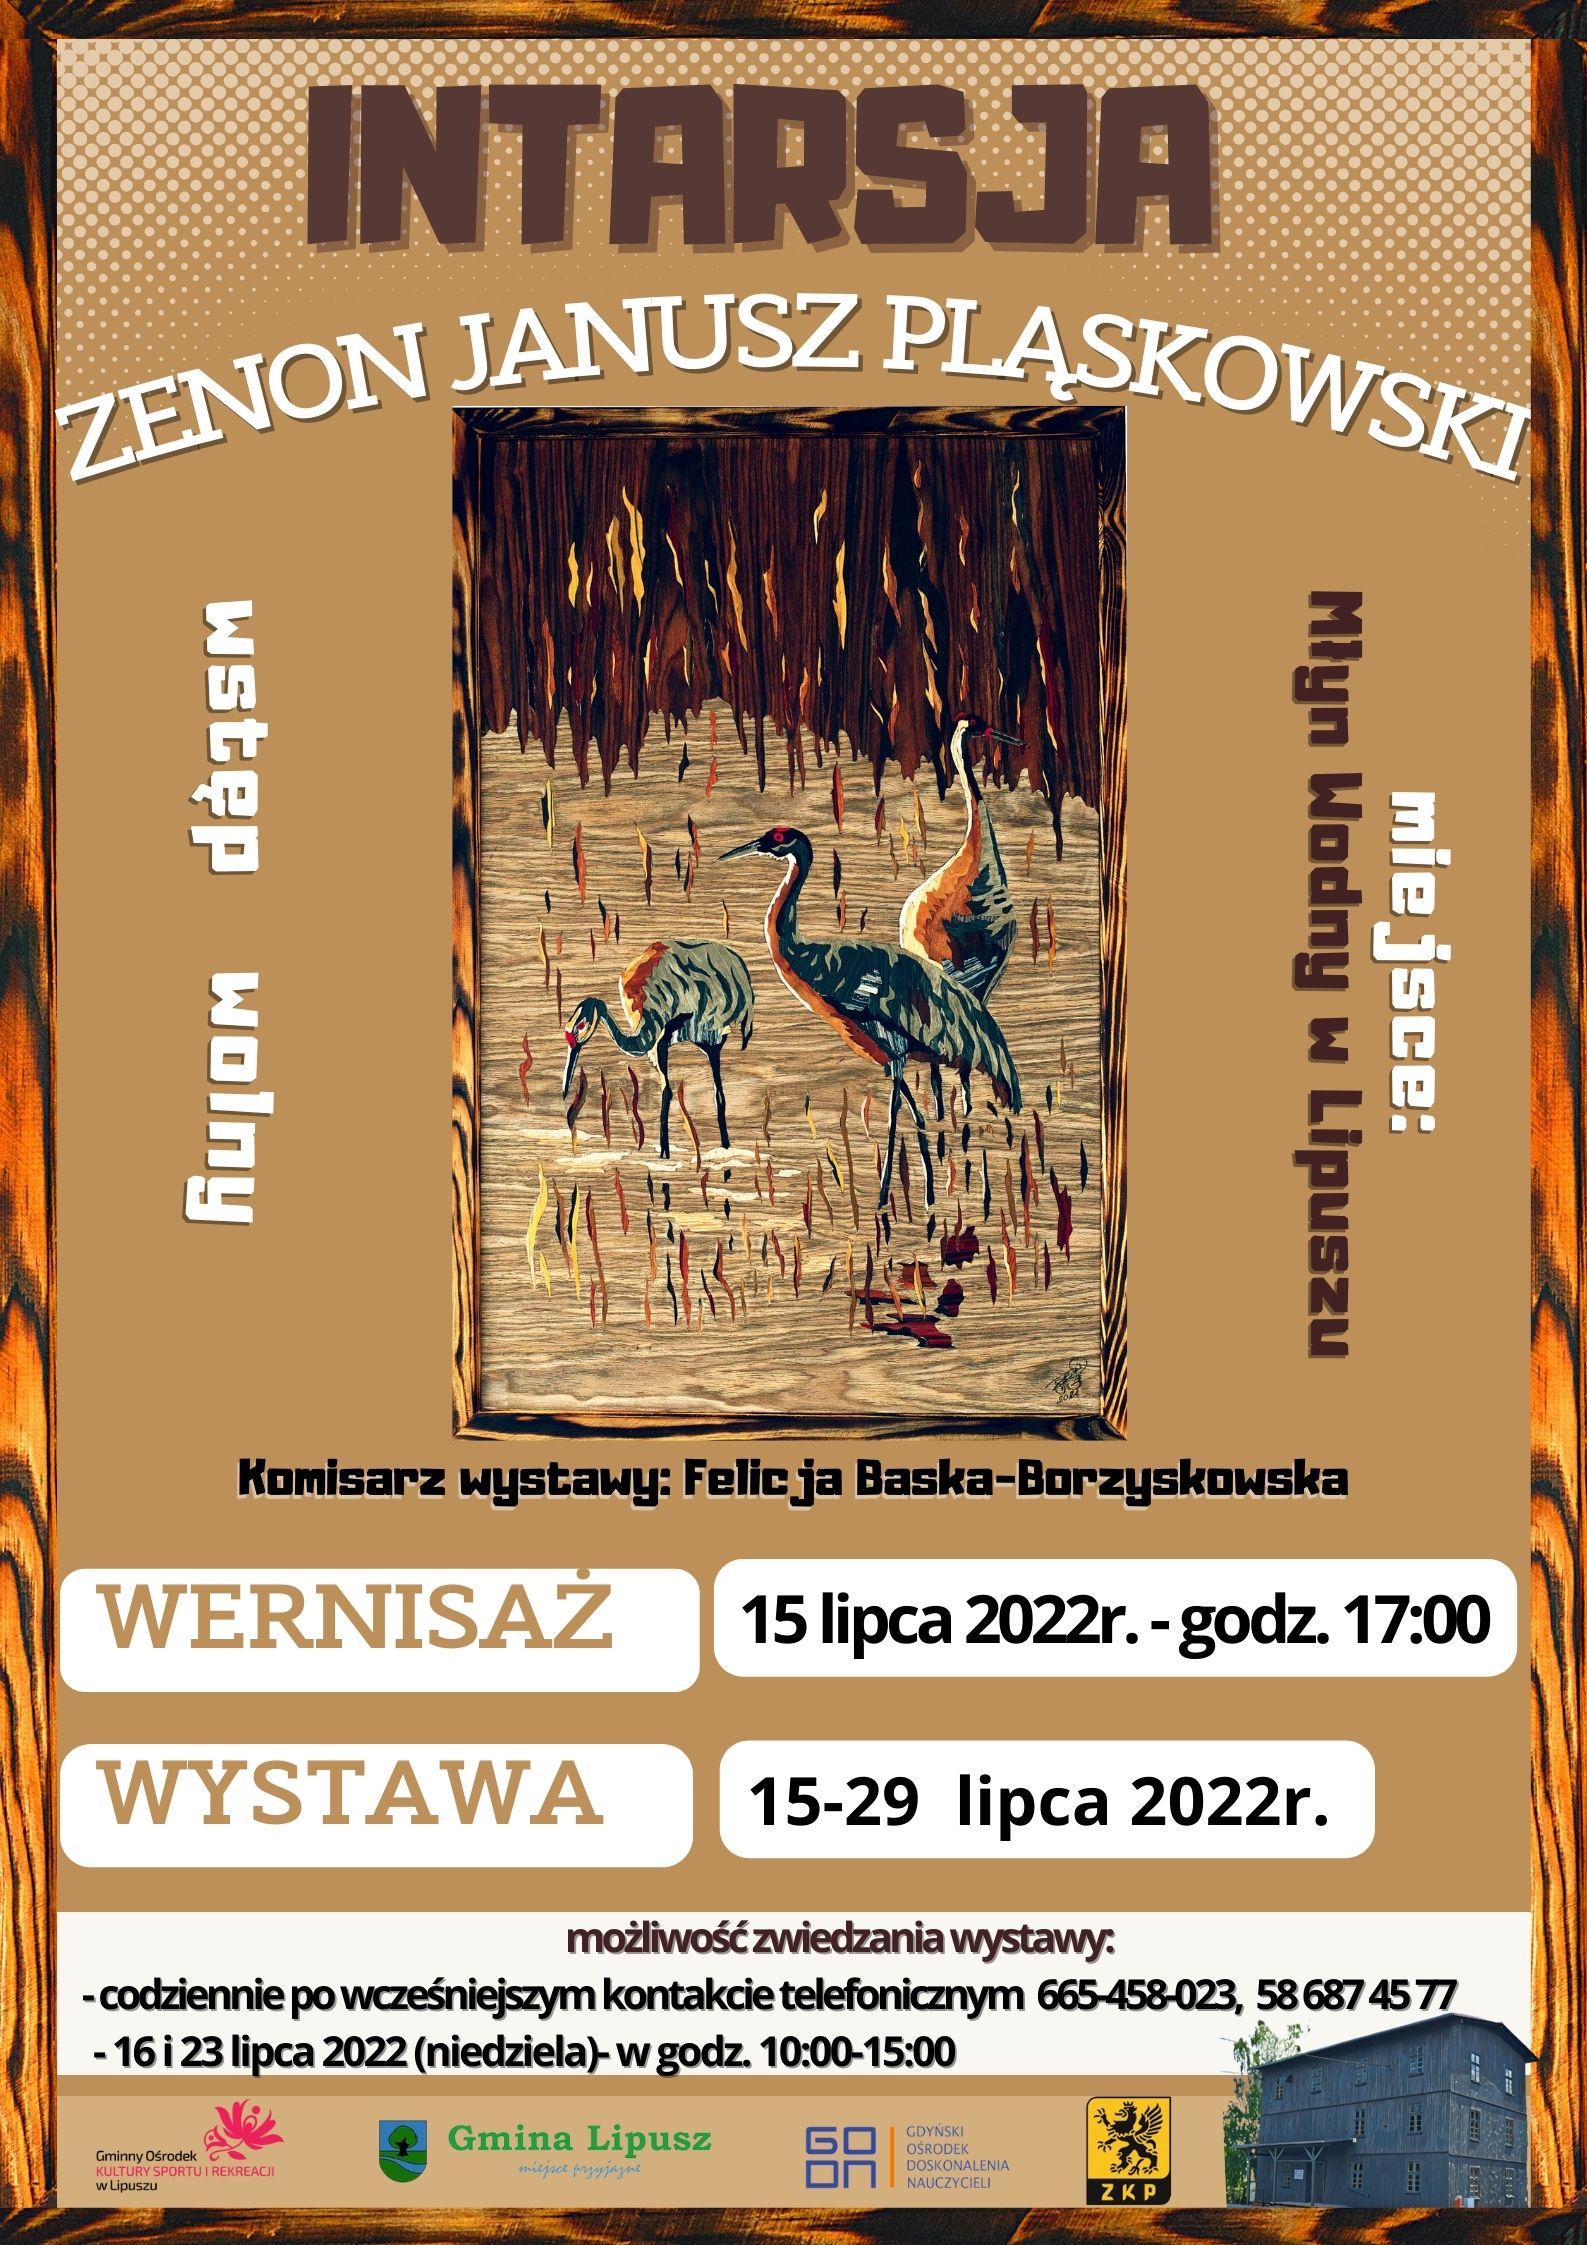 Intarsja Zenon Janusz Pląskowski - informacje